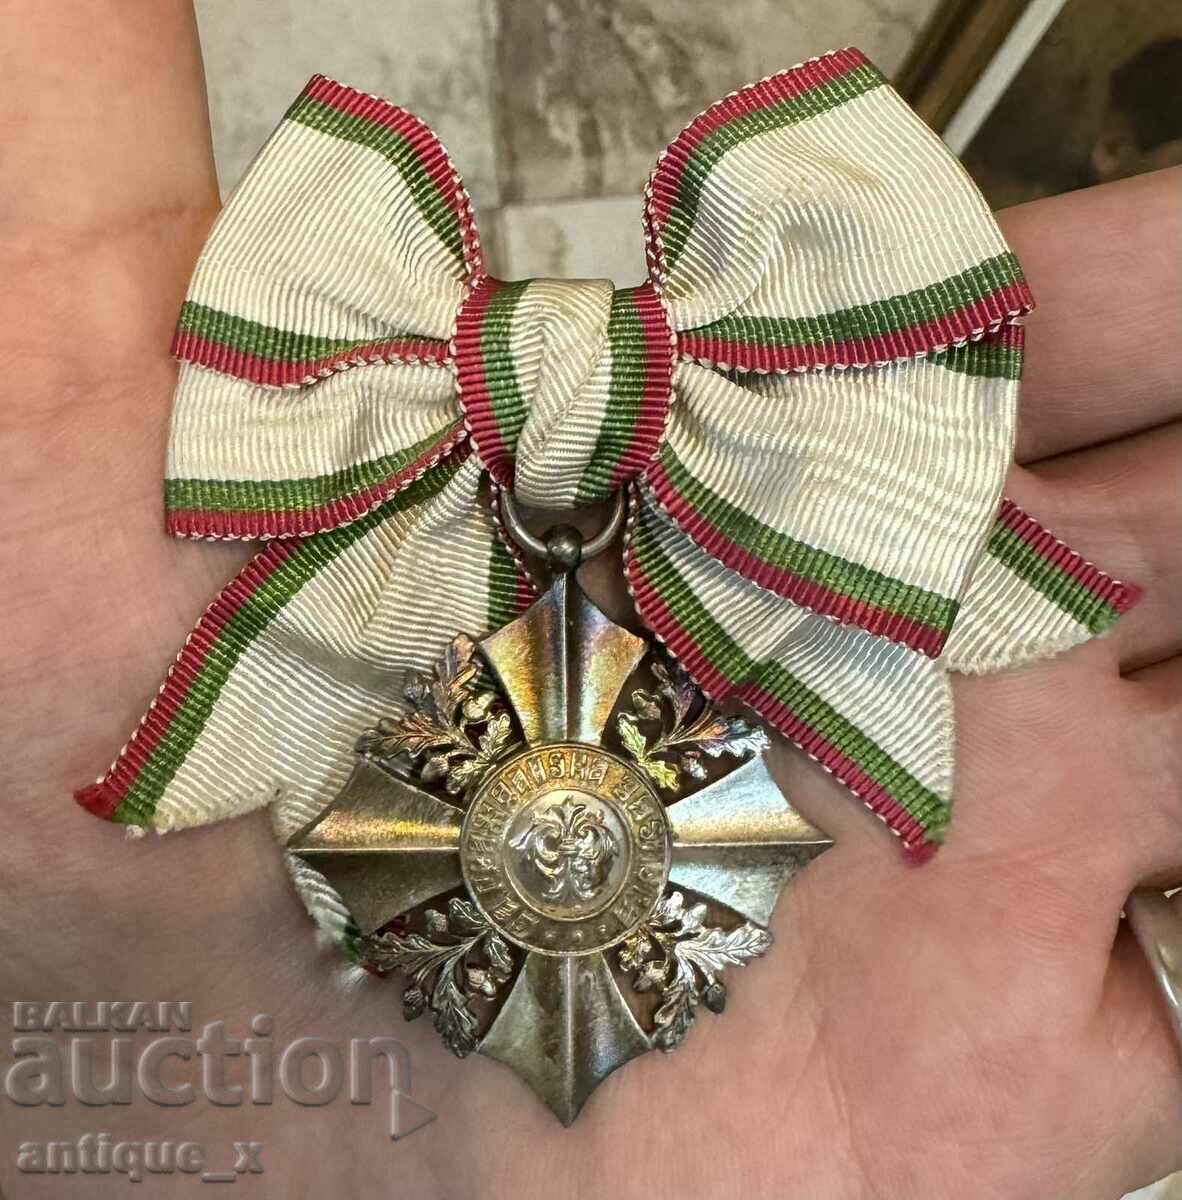 Царство България - орден “За гражданска заслуга” - VI степен